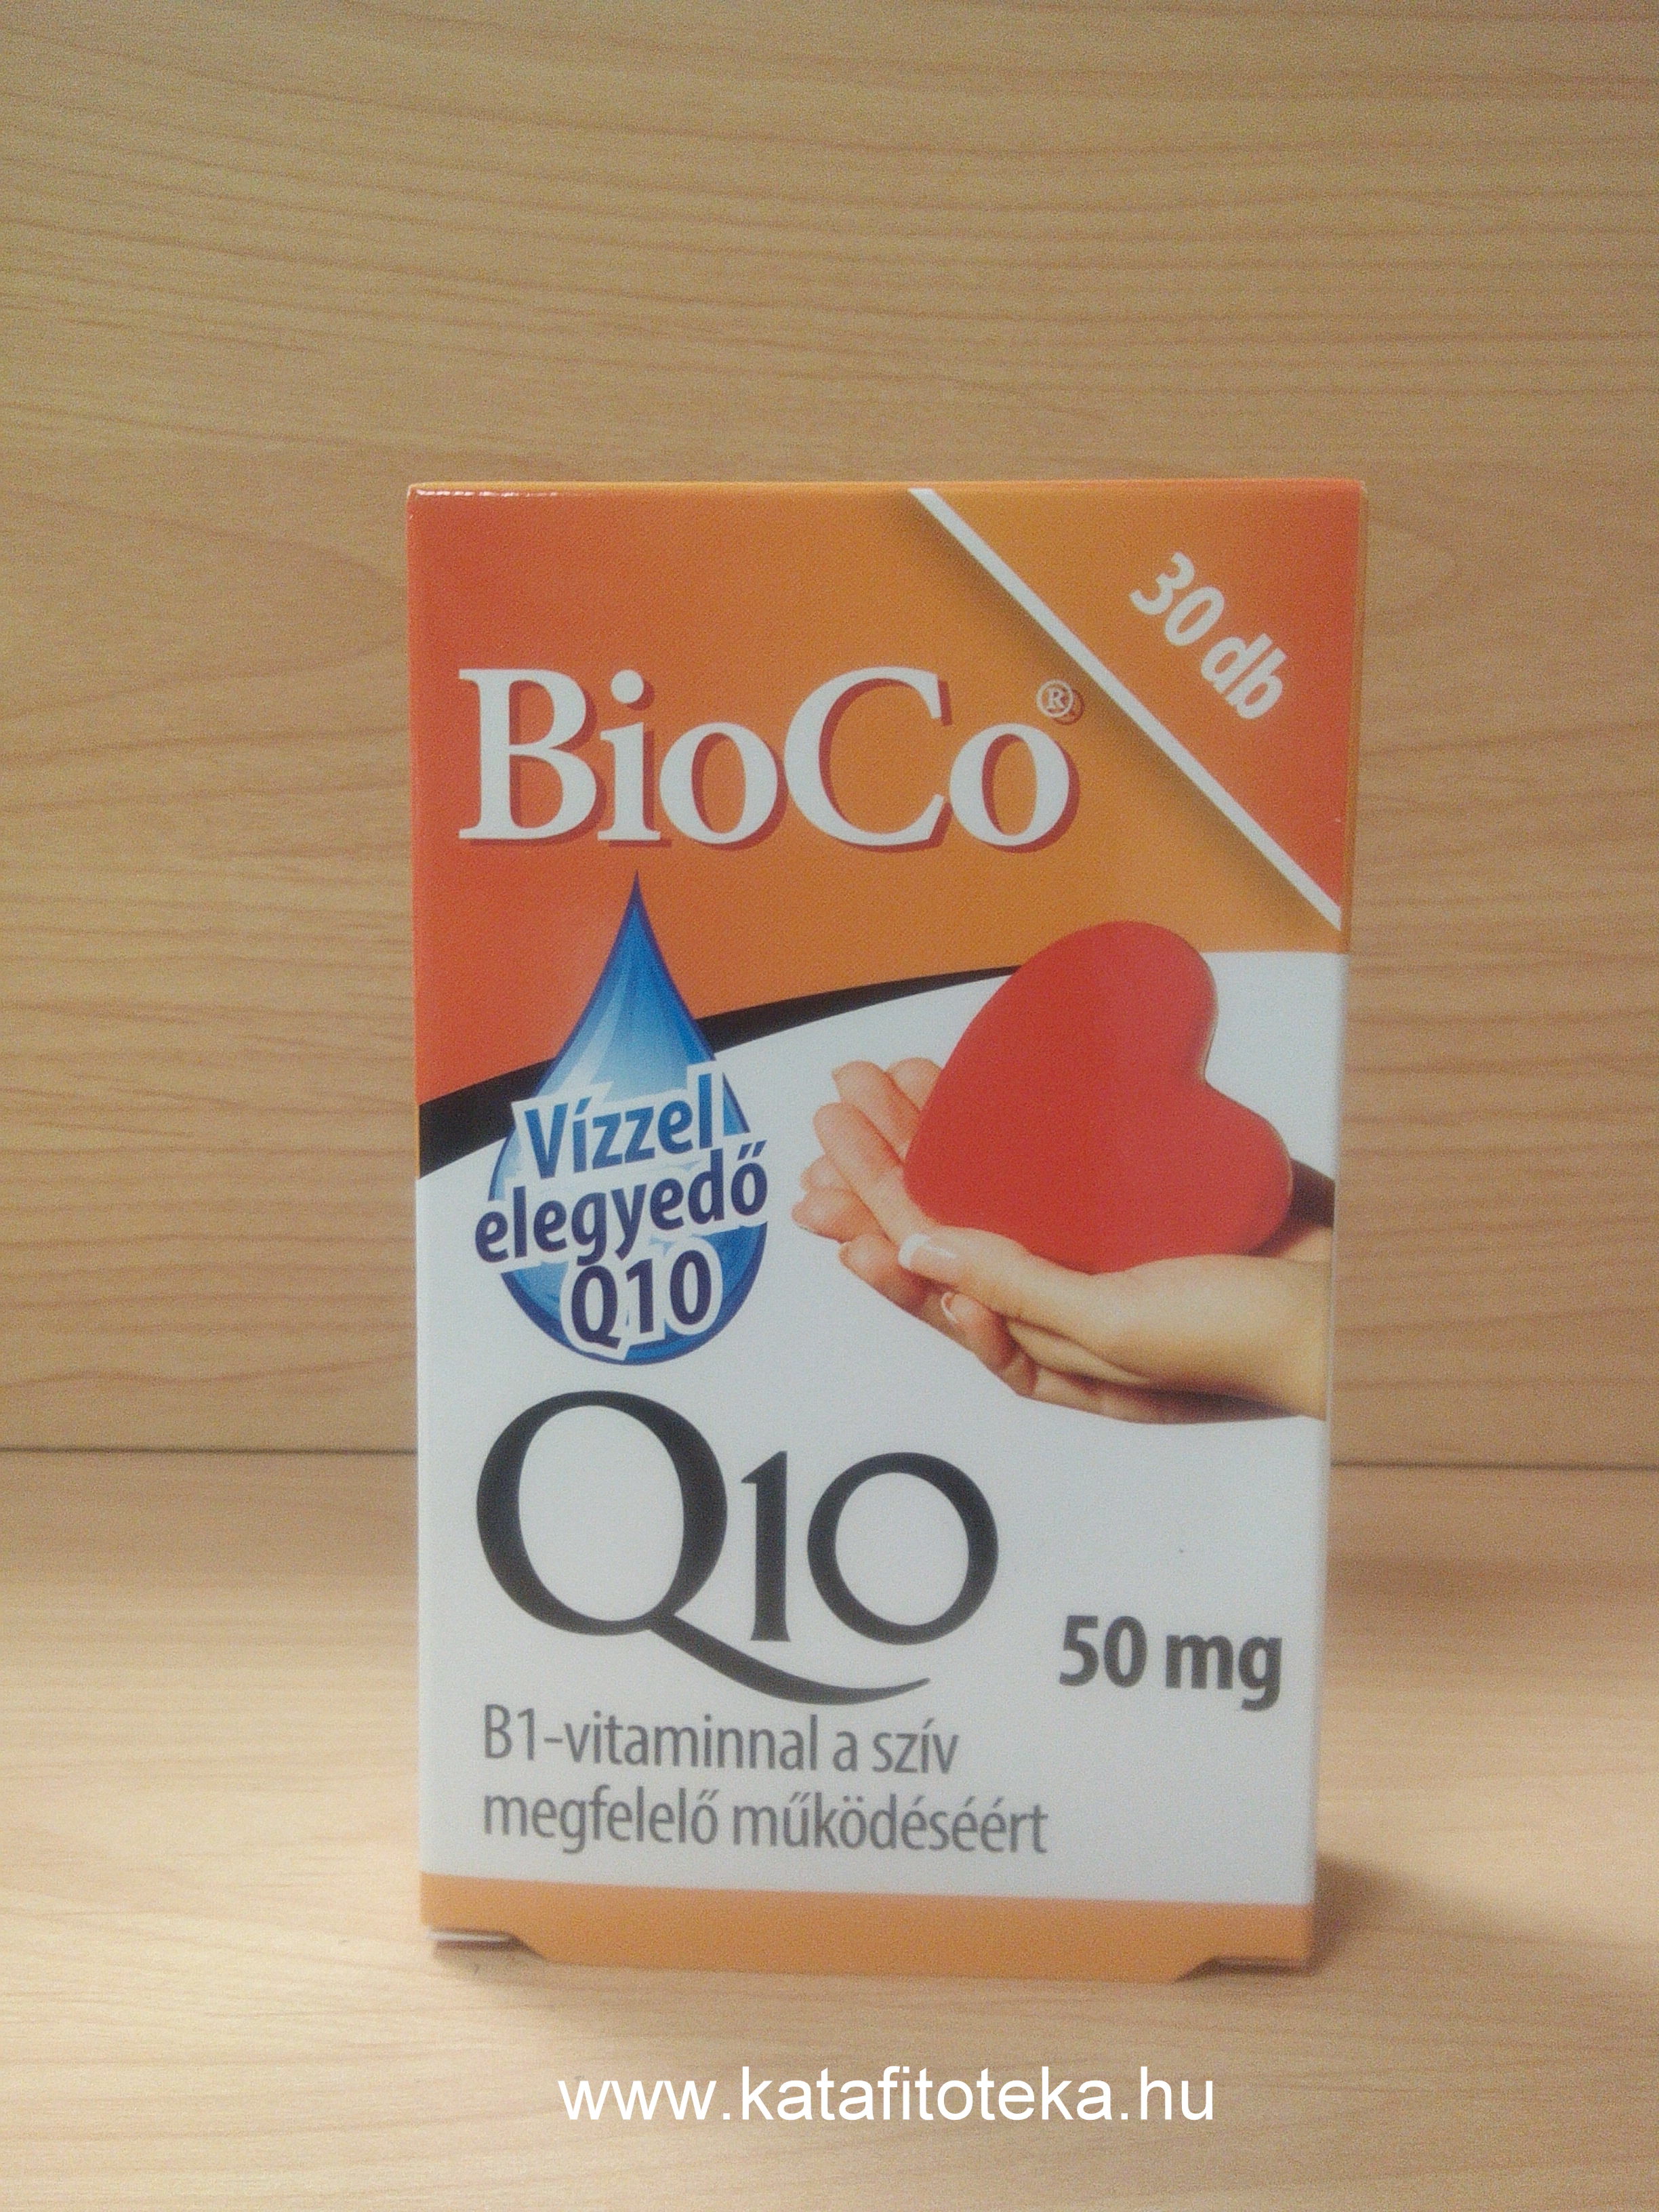 BioCo Vízzel elegyedő Q10 Mega 100 mg kapszula 30x